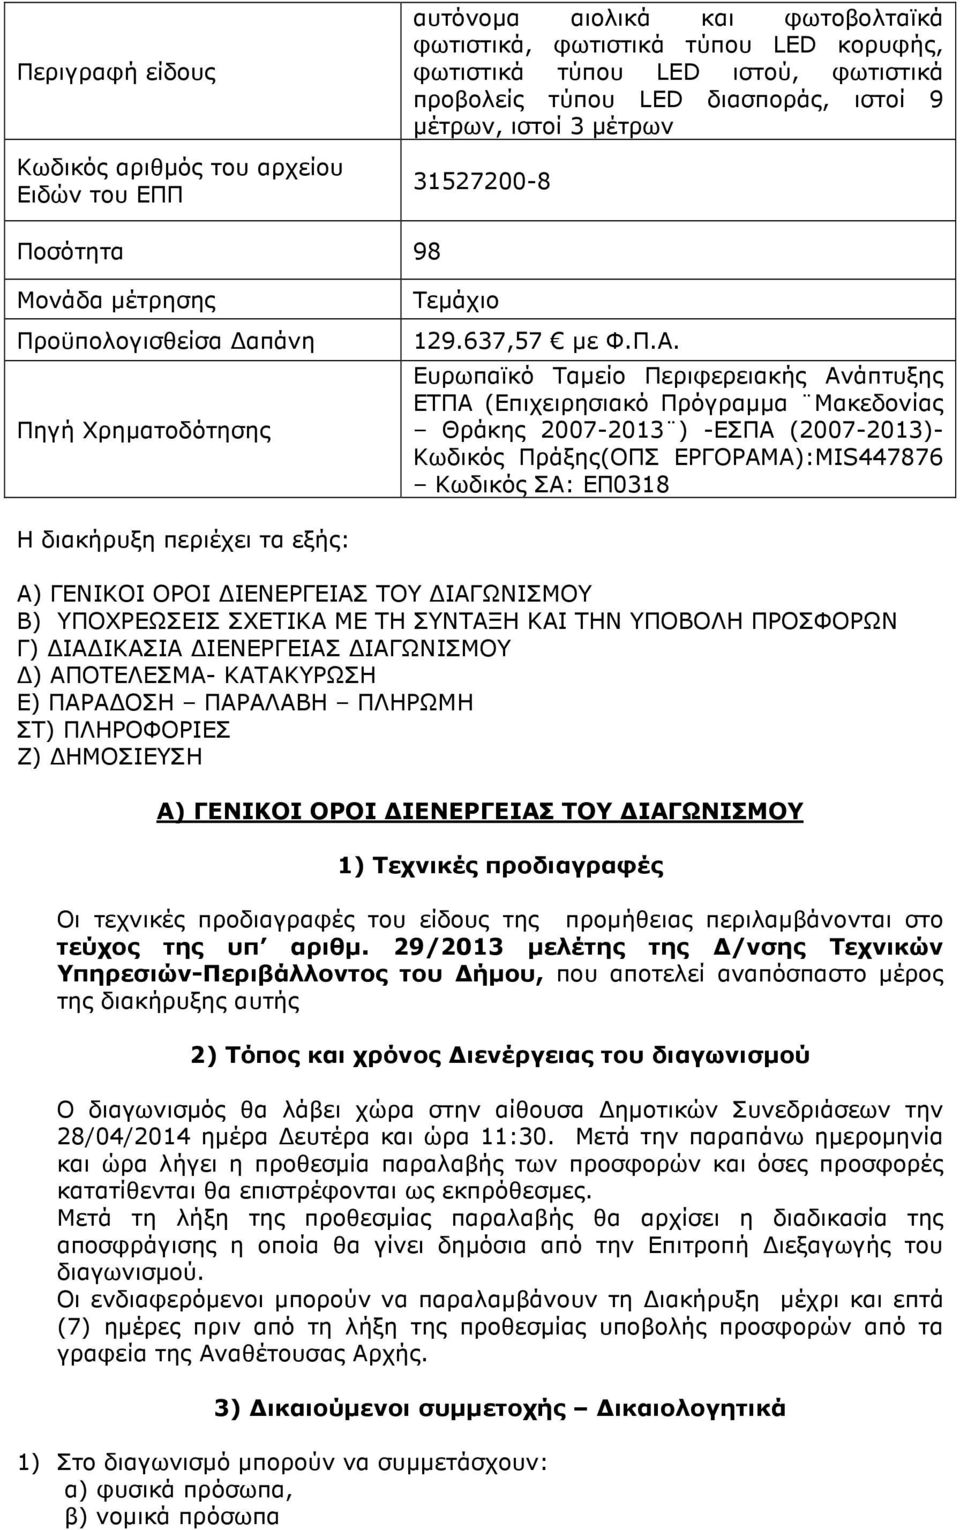 Ευρωπαϊκό Ταµείο Περιφερειακής Ανάπτυξης ΕΤΠΑ (Επιχειρησιακό Πρόγραµµα Μακεδονίας Θράκης 2007-2013 ) -ΕΣΠΑ (2007-2013)- Κωδικός Πράξης(ΟΠΣ ΕΡΓΟΡΑΜΑ):MIS447876 Κωδικός ΣΑ: ΕΠ0318 Η διακήρυξη περιέχει